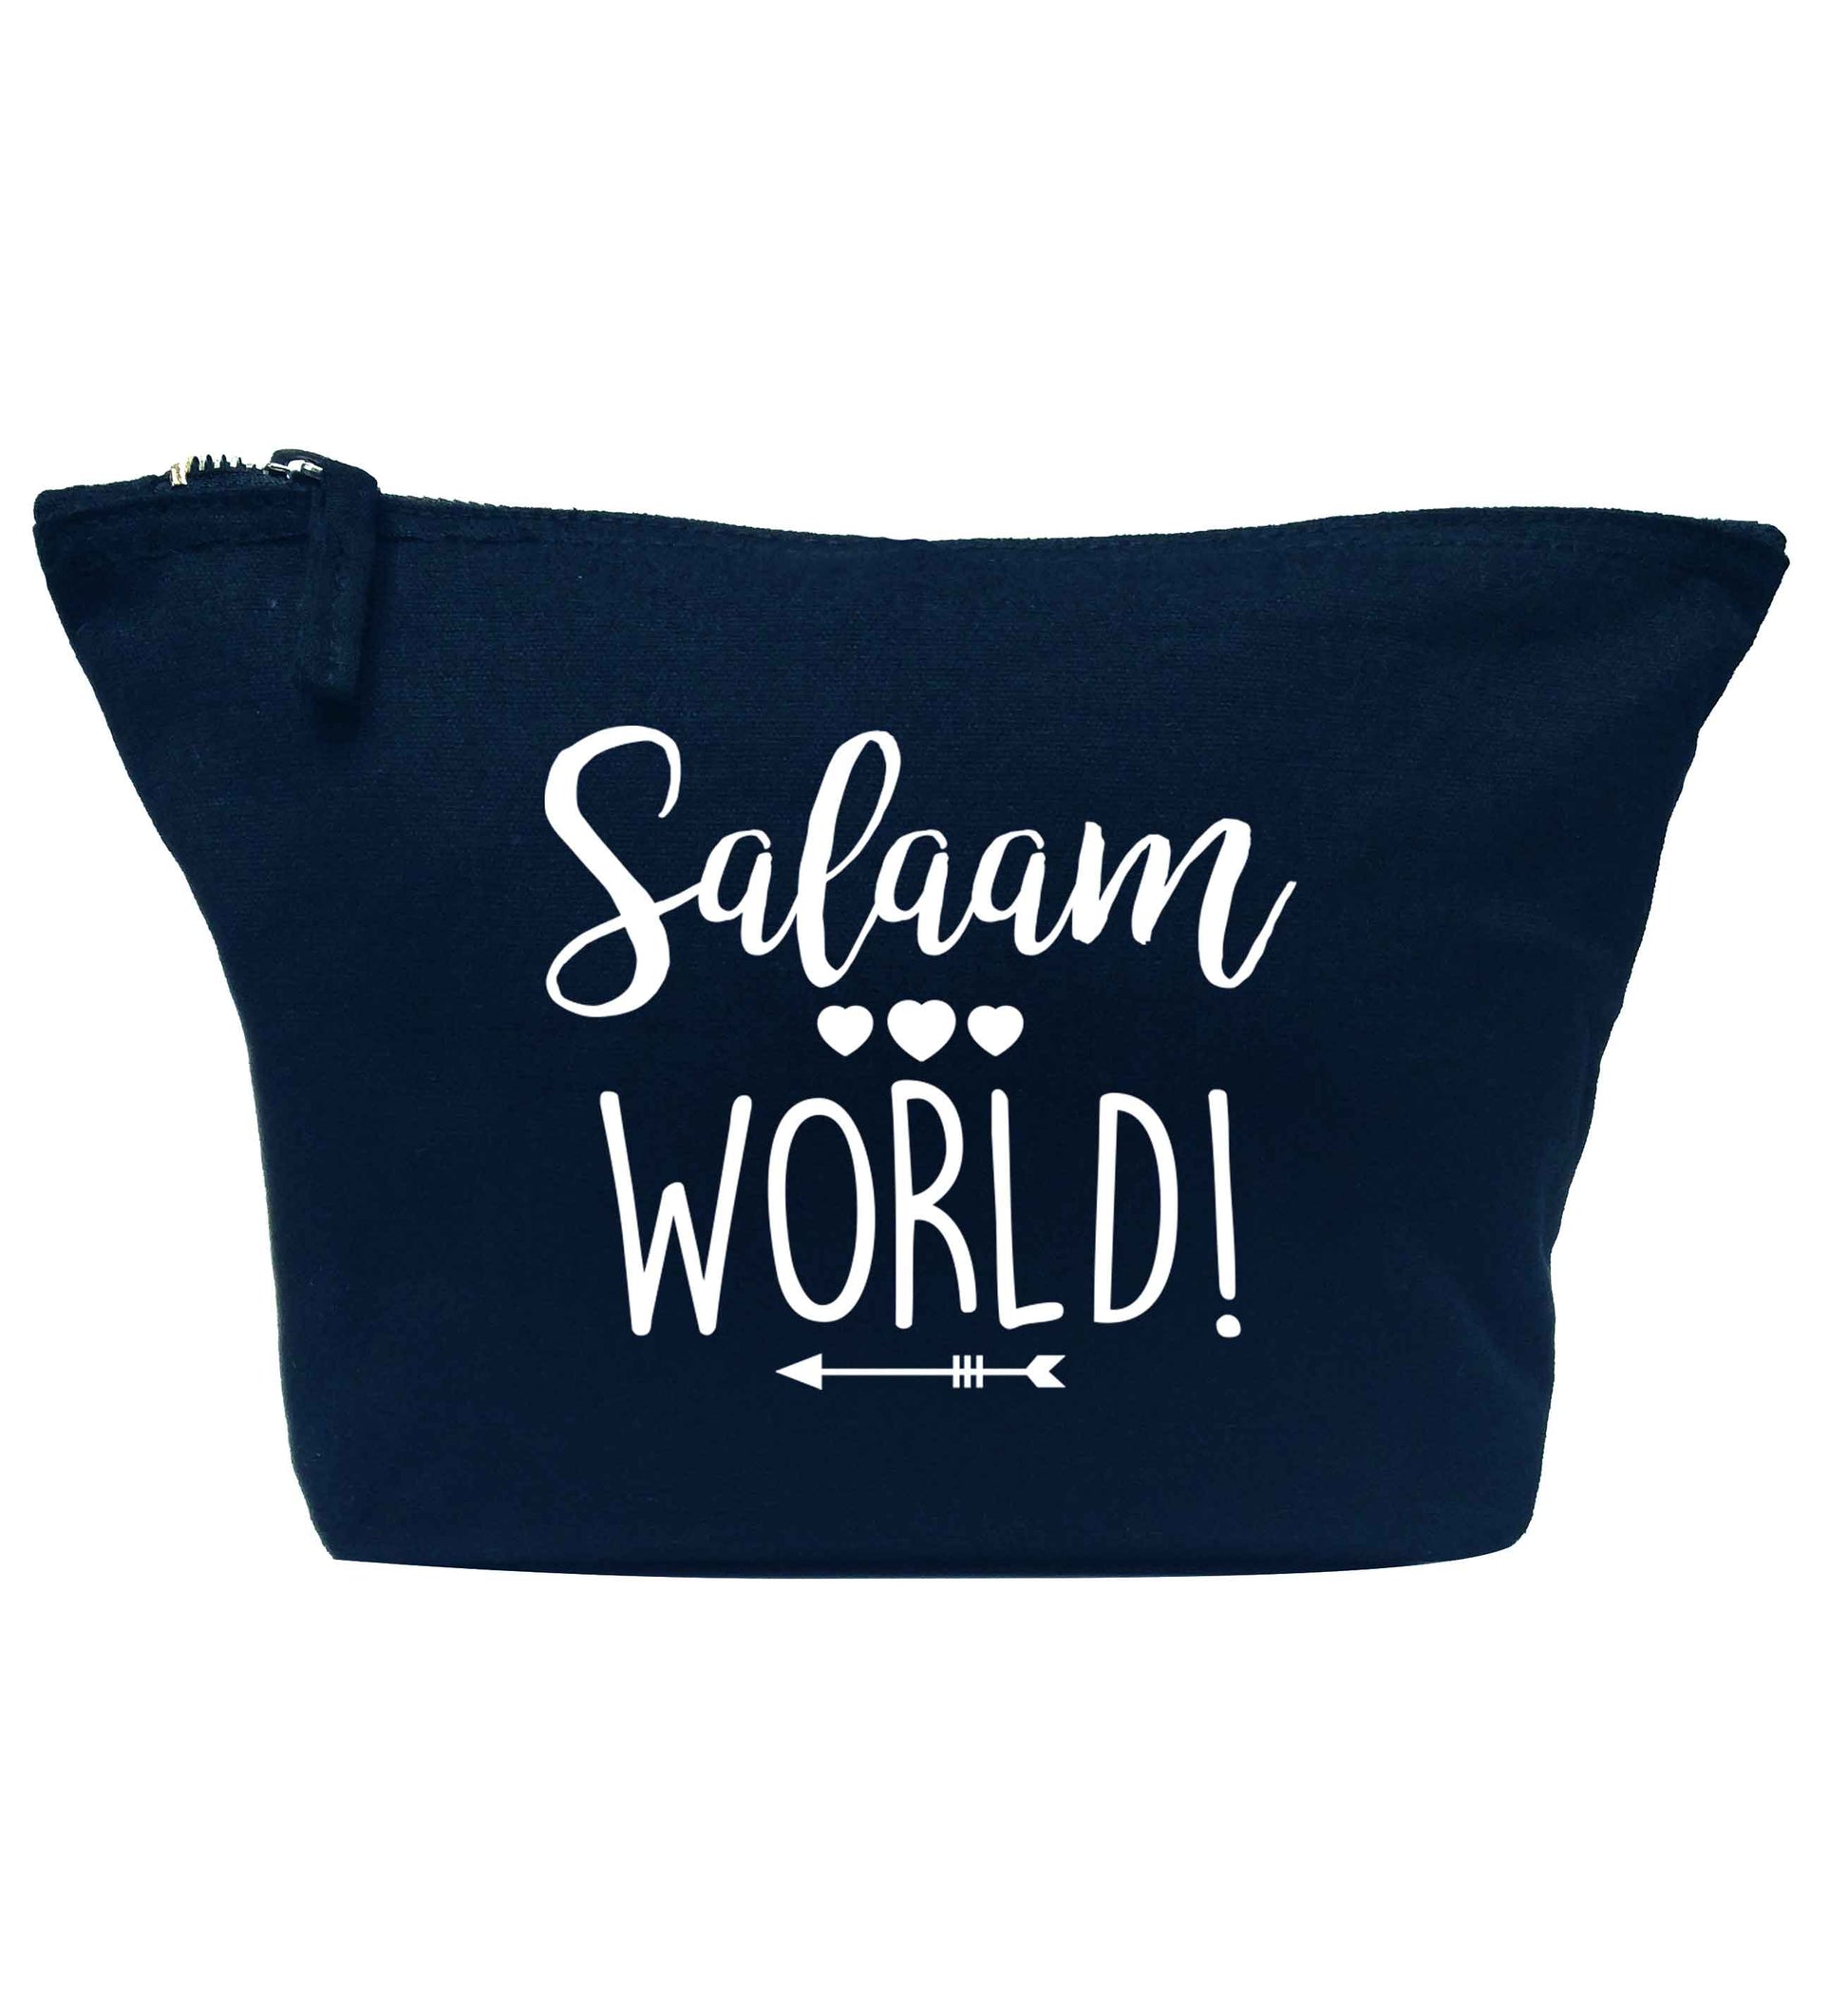 Salaam world navy makeup bag